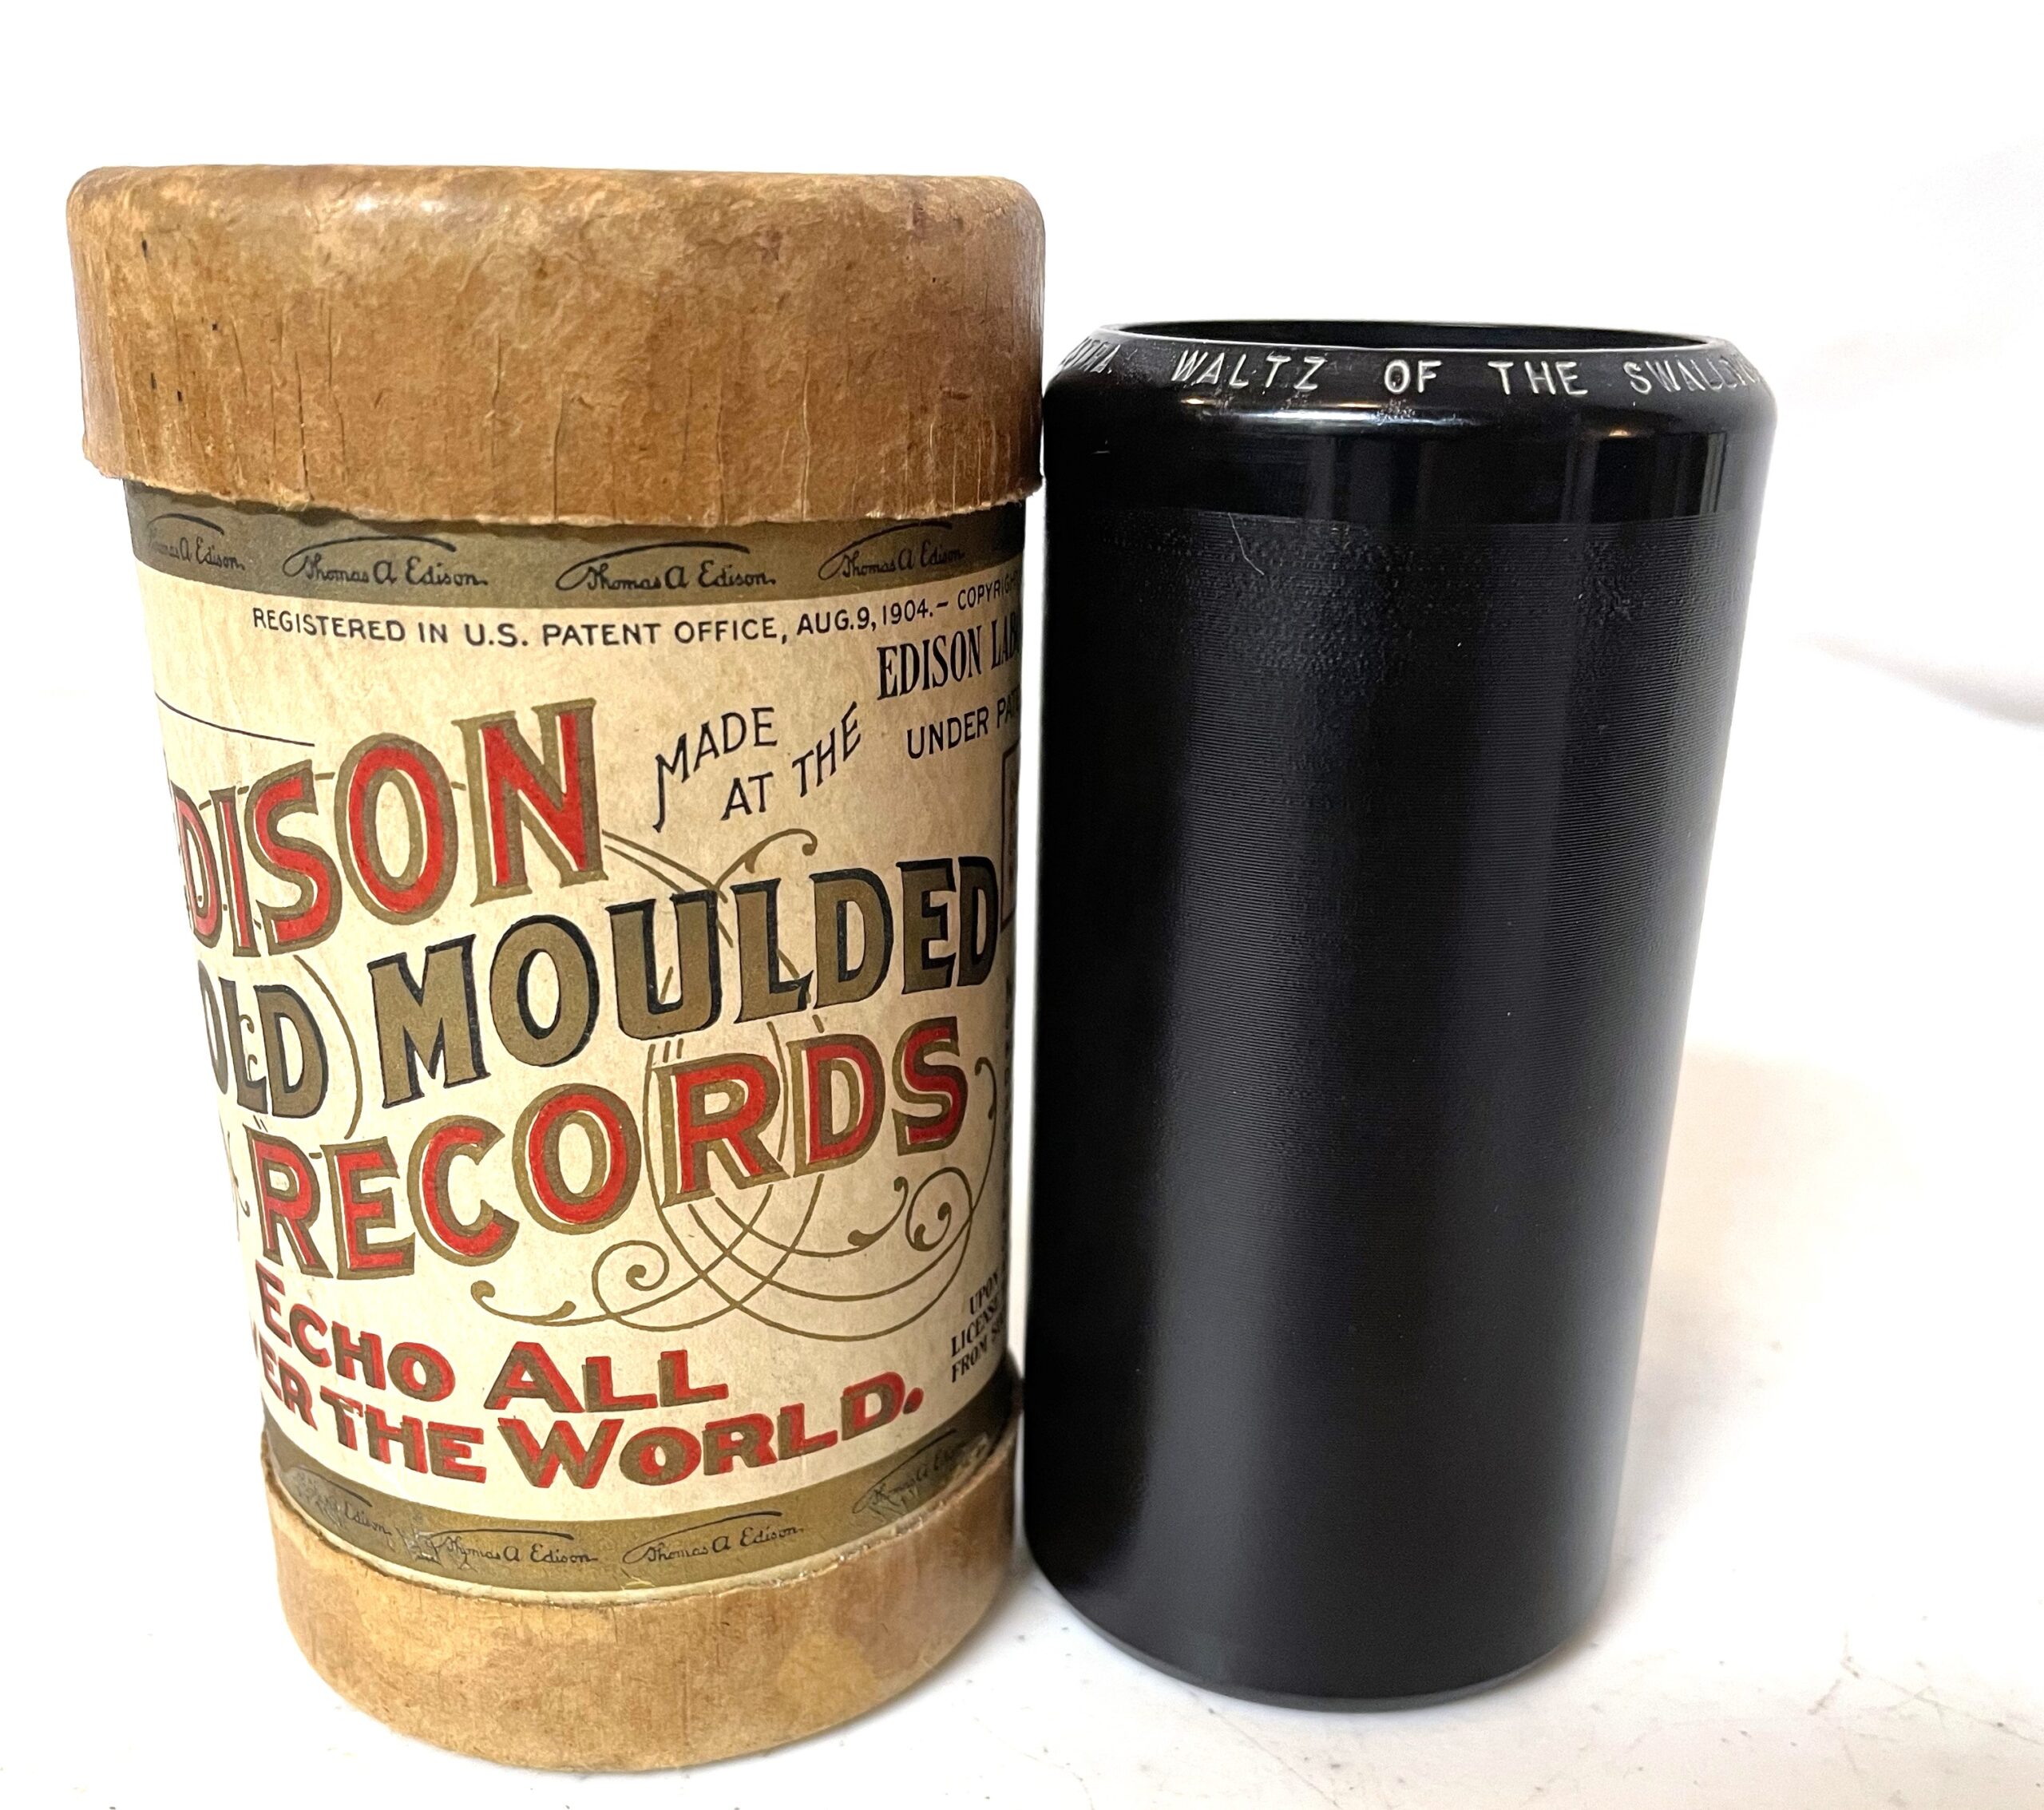 Edison 2-minute Cylinder…”A Bit O’ Blarney”